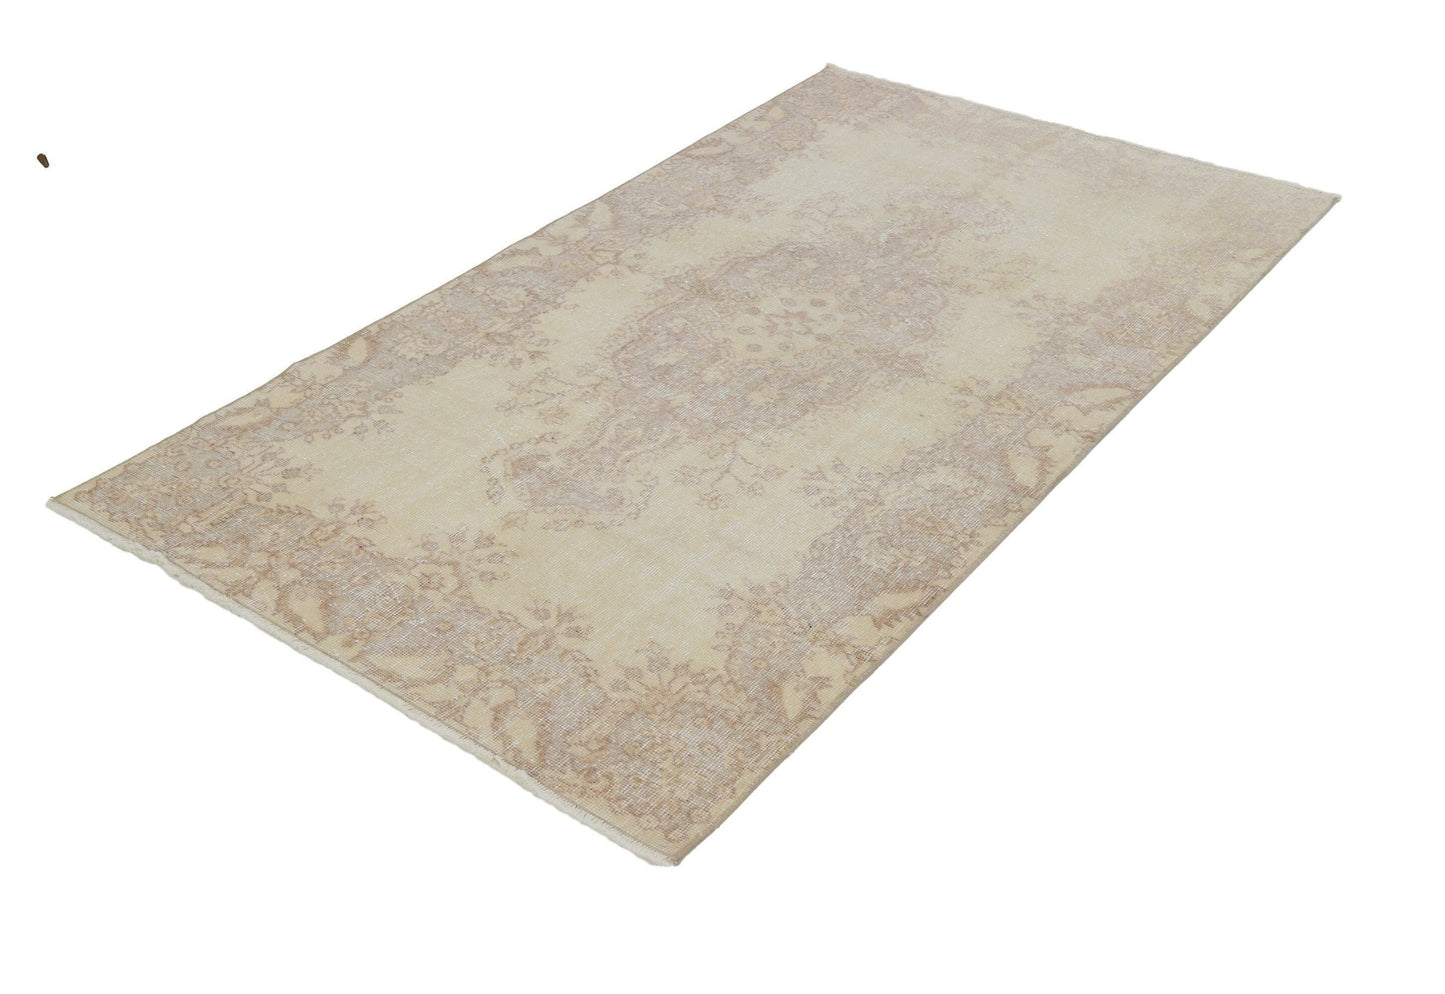 Oushak rug,Turkish rug,Vintage rug,Small rug,Bedroom rug,Small Oushak rug,Faded rug,Beige rug 4x7,Vintage Turkish Oushak rug 4x7,7121